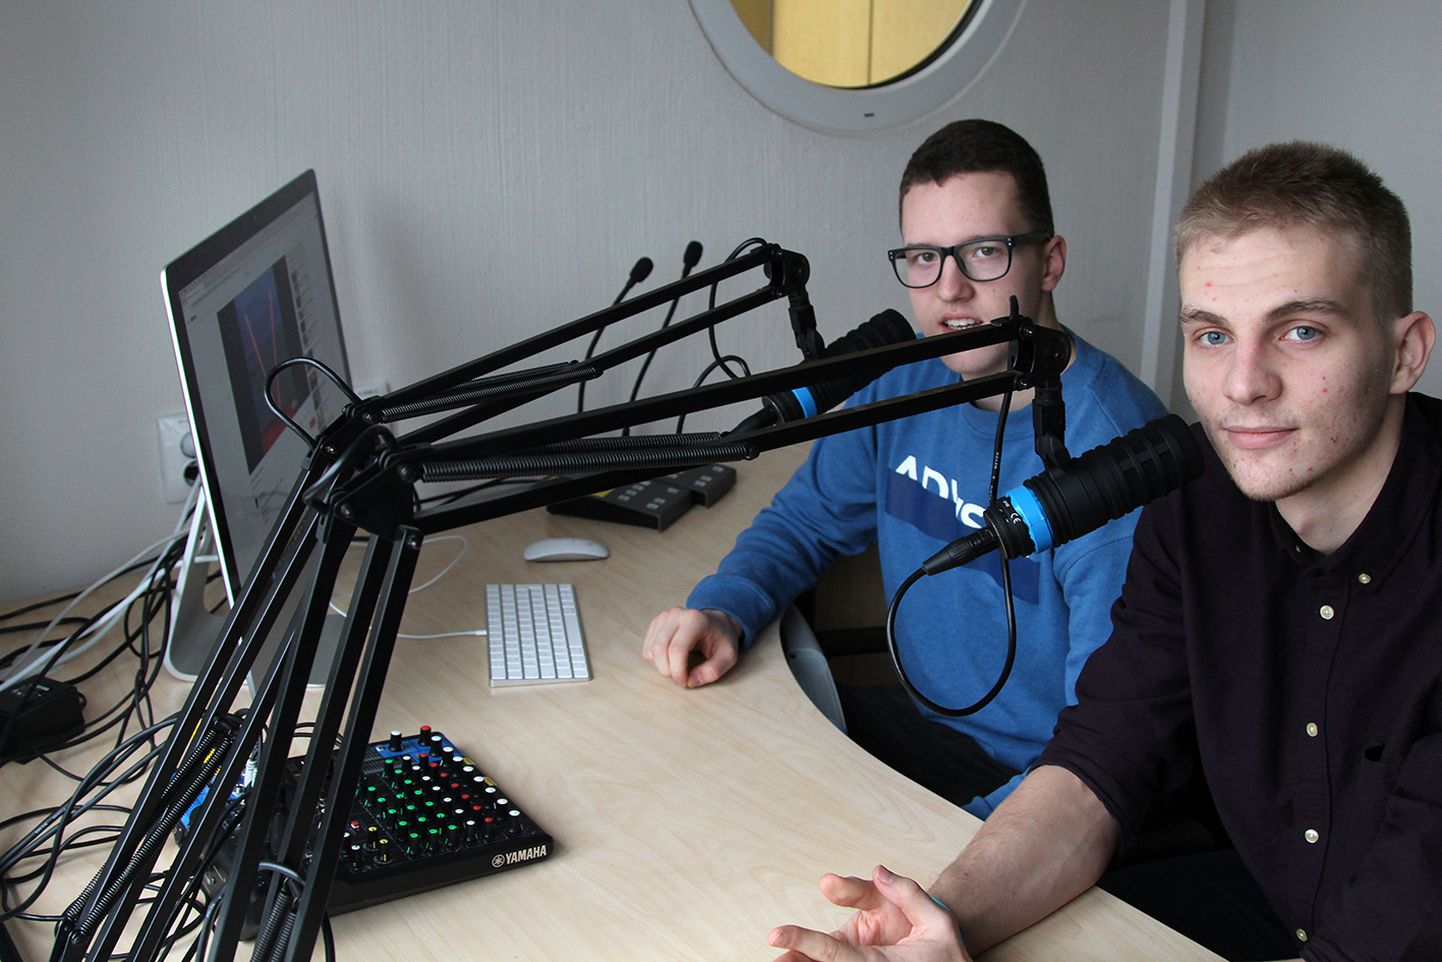 Paide gümnaasiumi õpilased Rauno Uusleer (vasakul) ja Sten Perillus tulid välja raadiosaatega «2 miljonist».